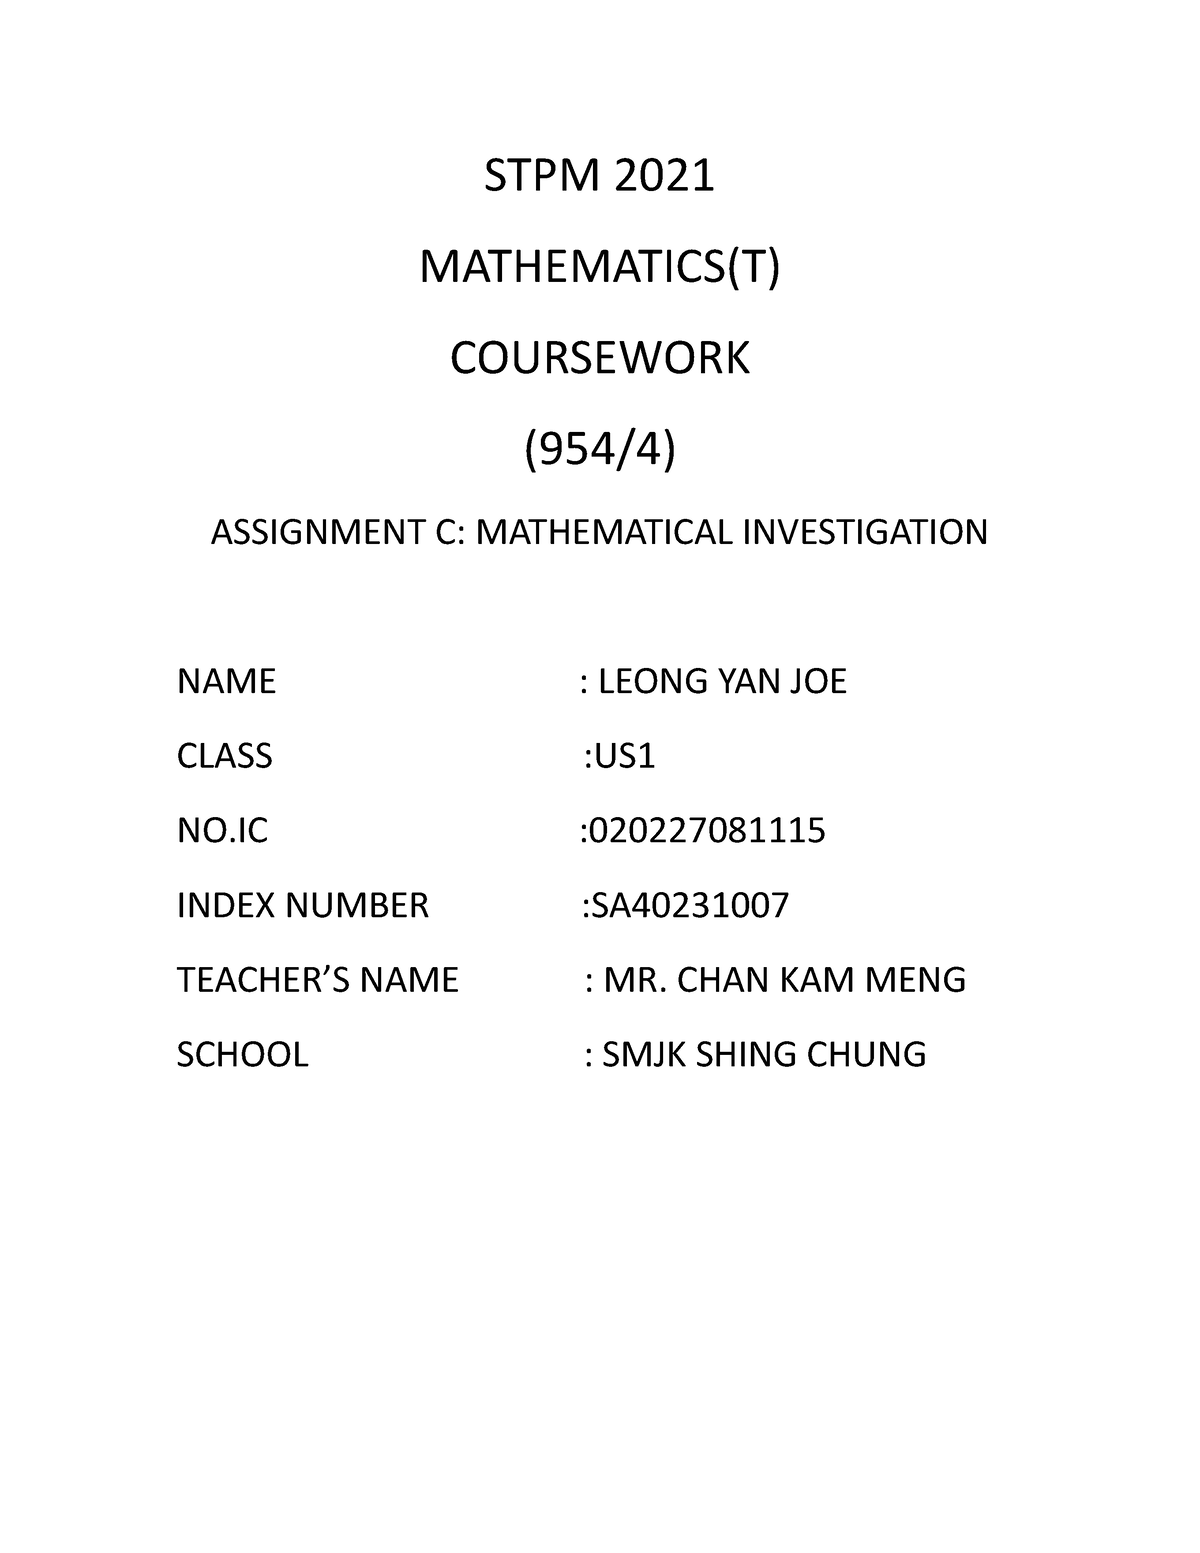 maths t coursework sem 3 2021